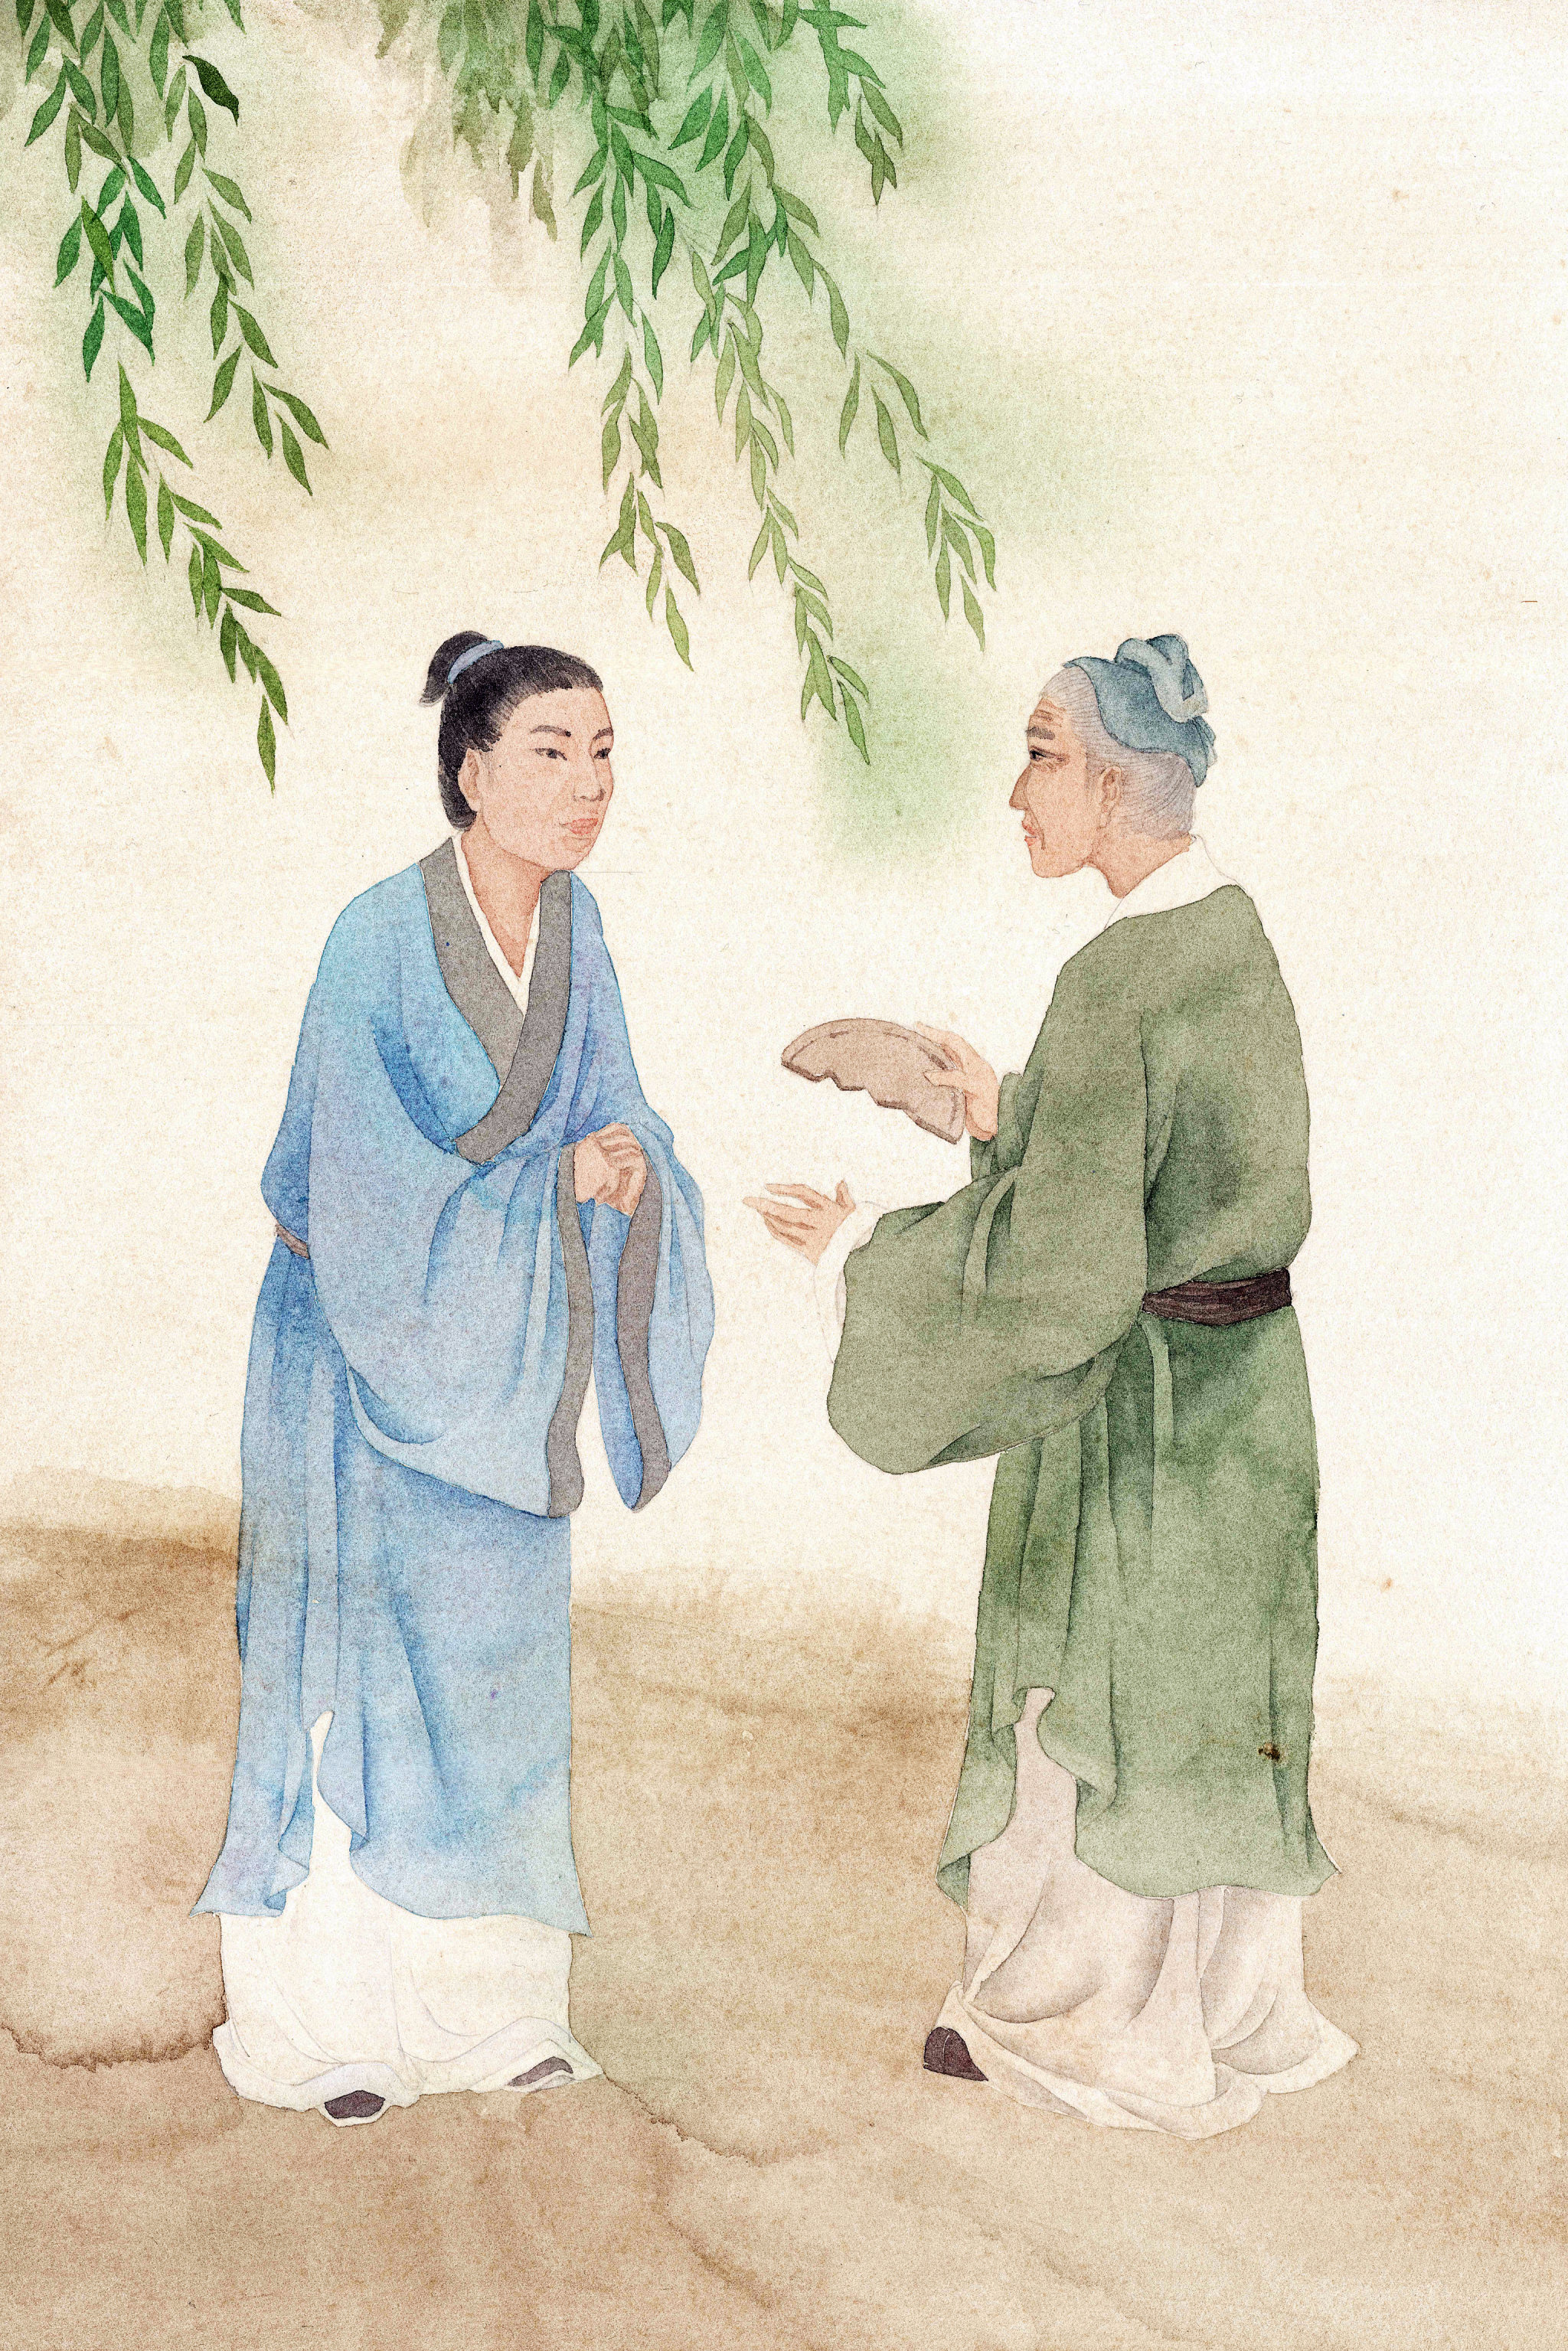 本作品是为《中国民间传说故事》绘制插图,这本书中的故事歌颂了人物